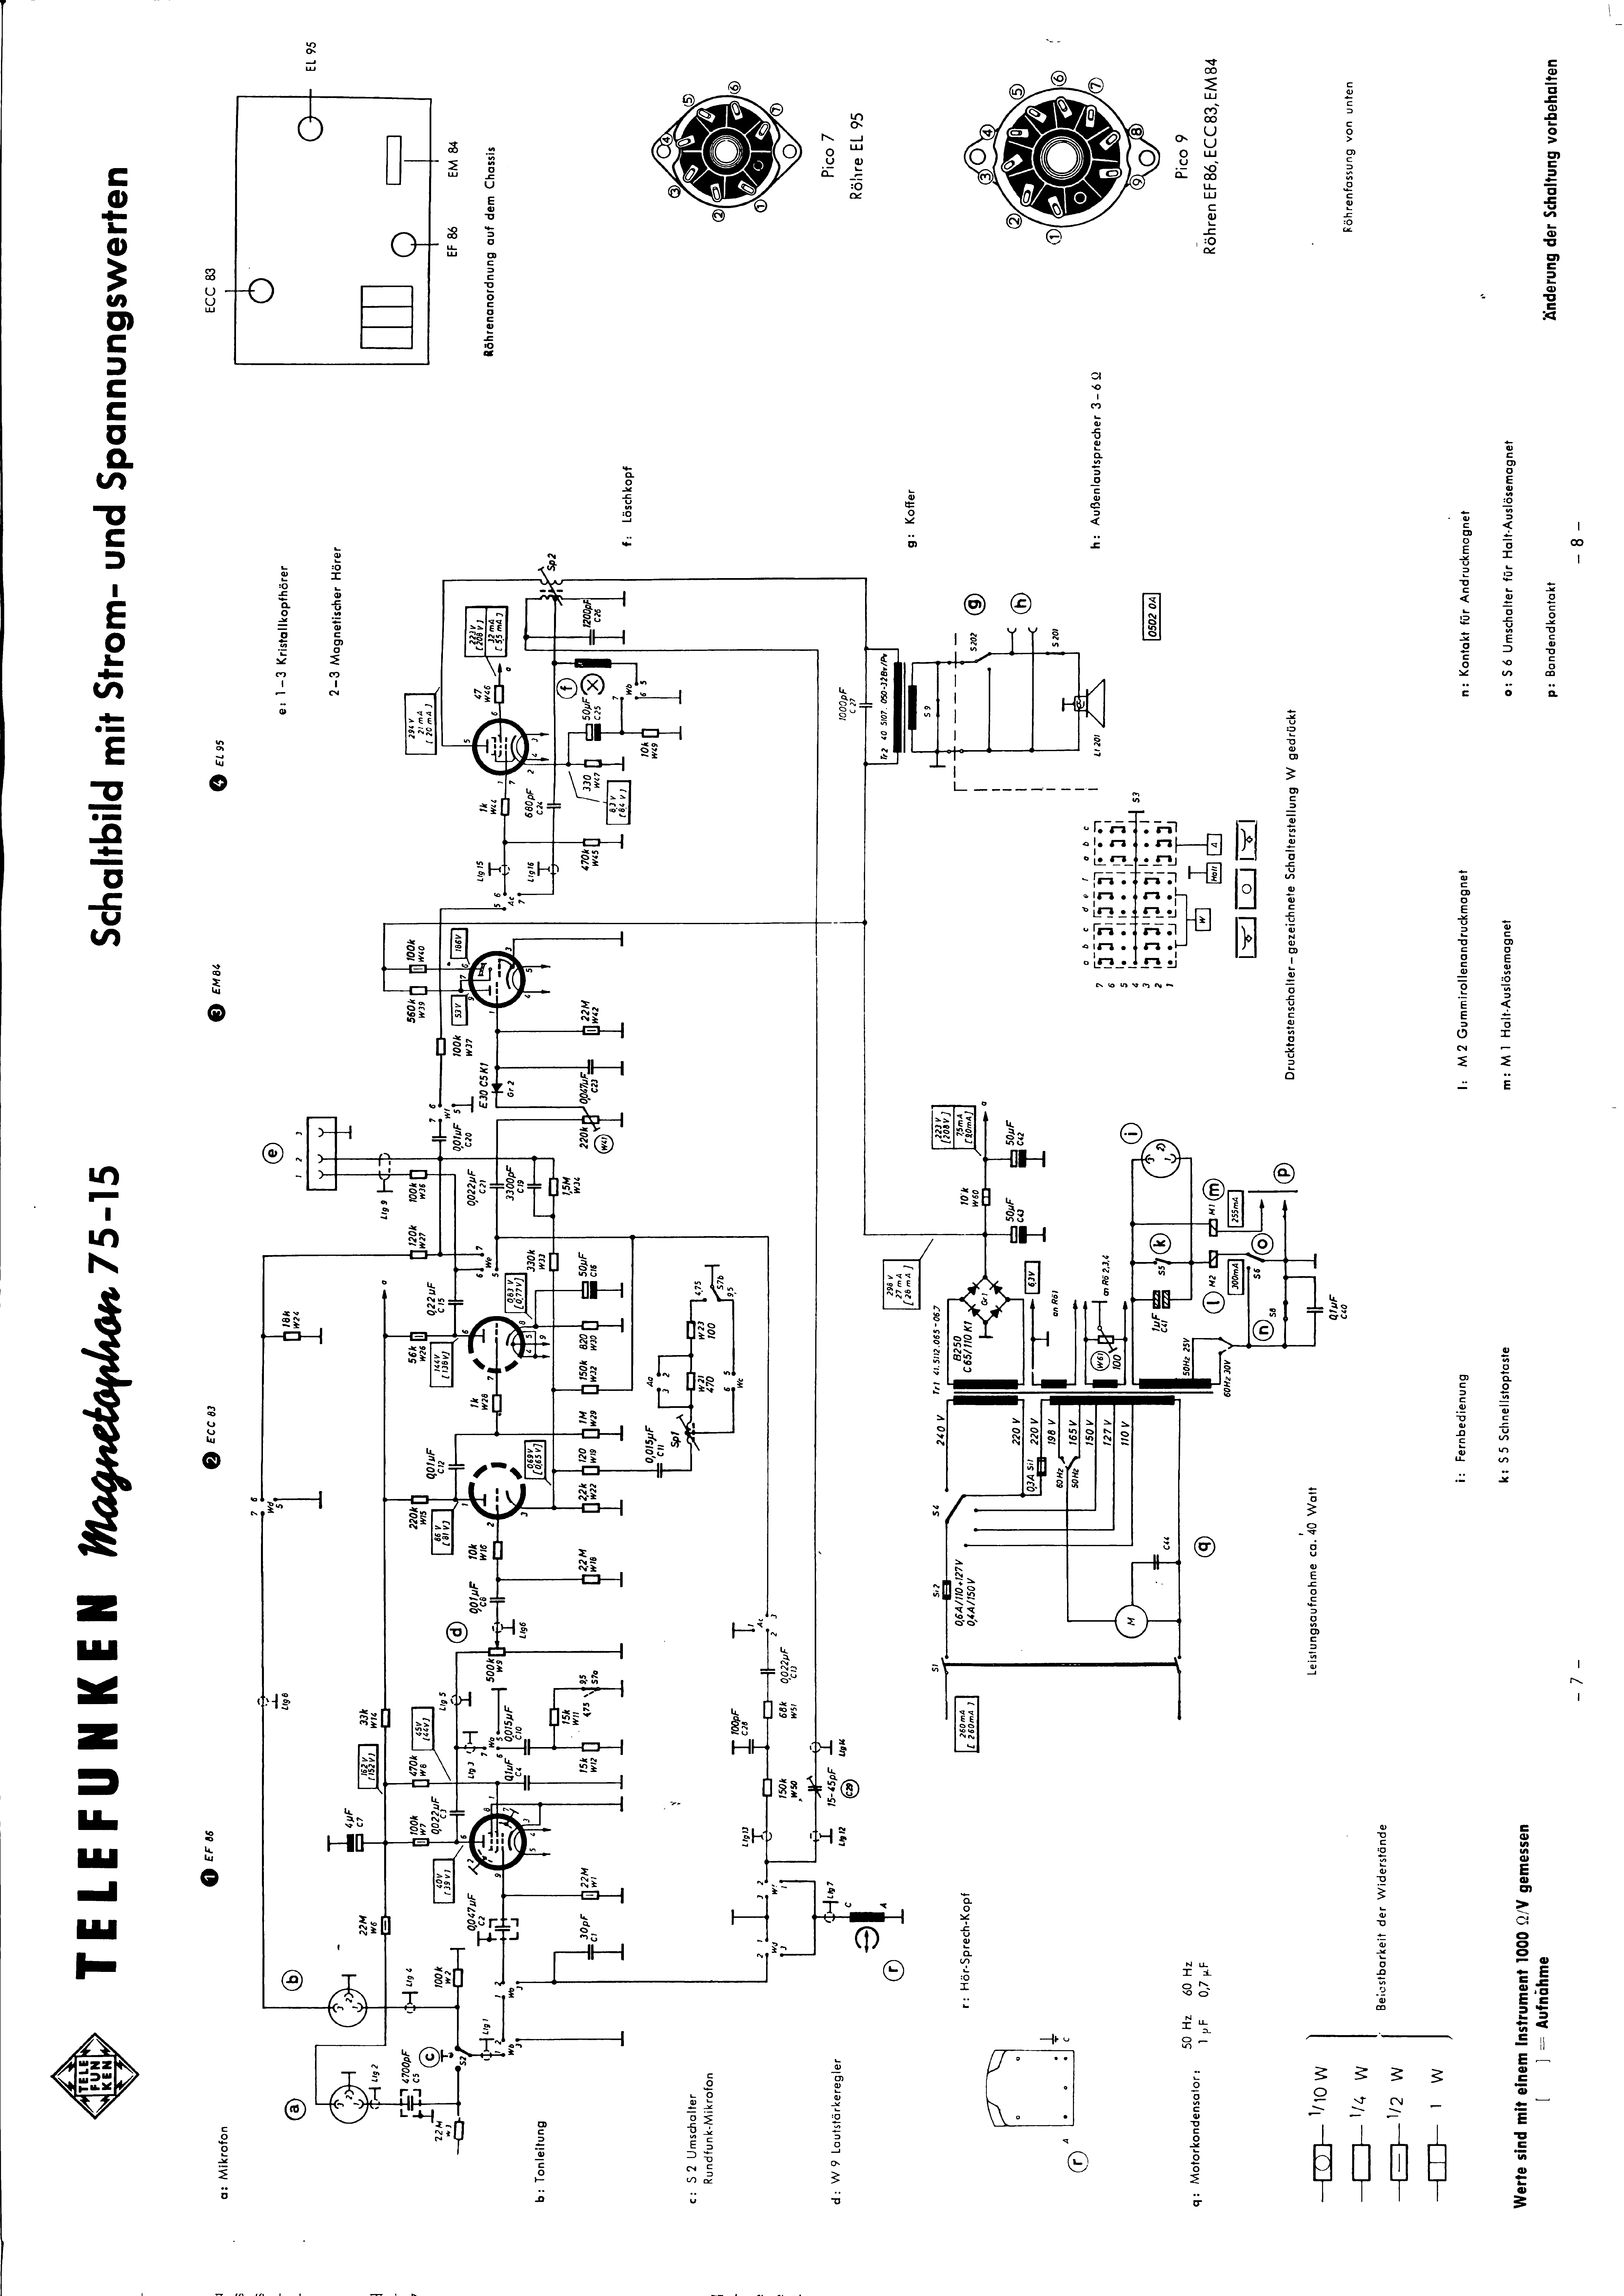 Service Manual-Bedienungsanleitung für Telefunken Magnetophon M 15 ¼ Geräte 